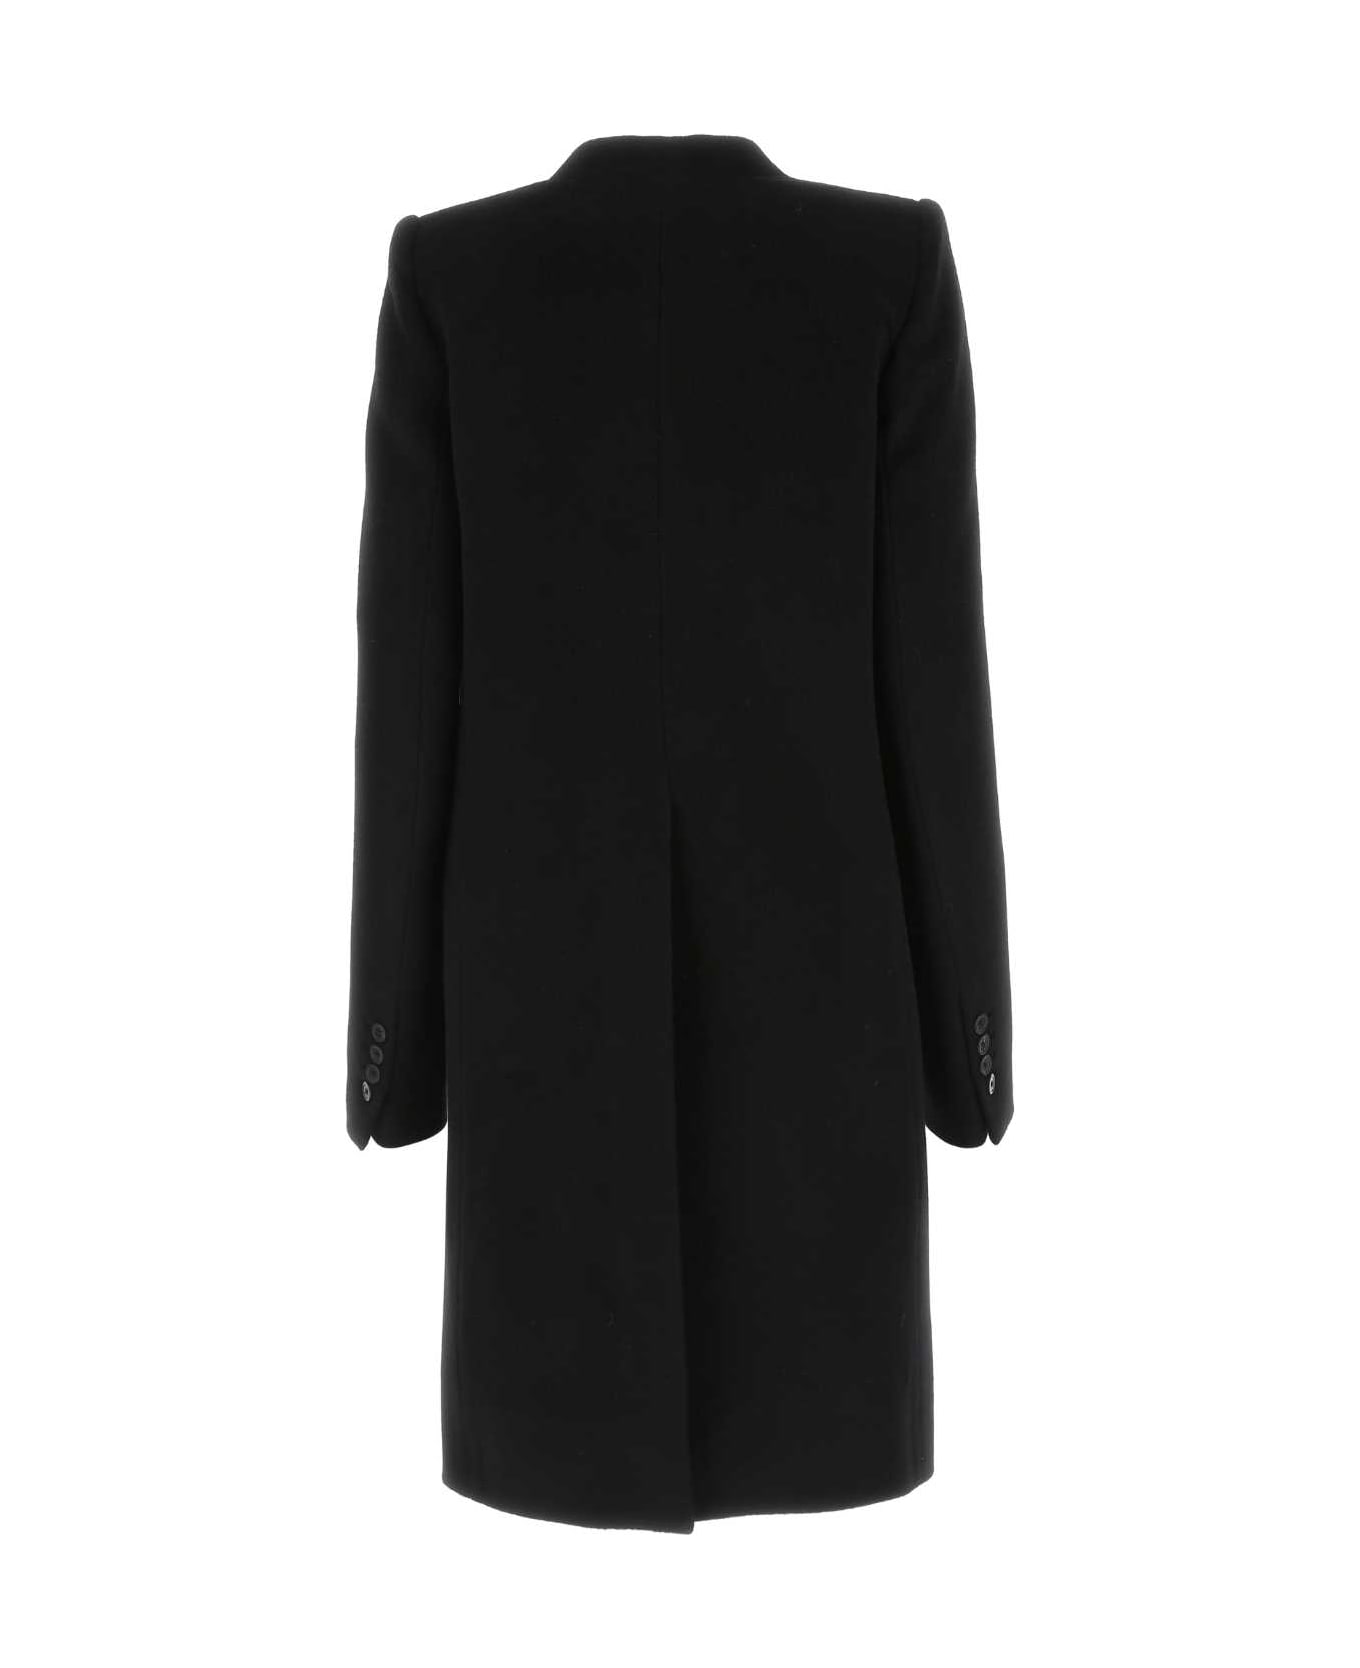 Ann Demeulemeester Black Wool Blend Celine Coat - 099 コート